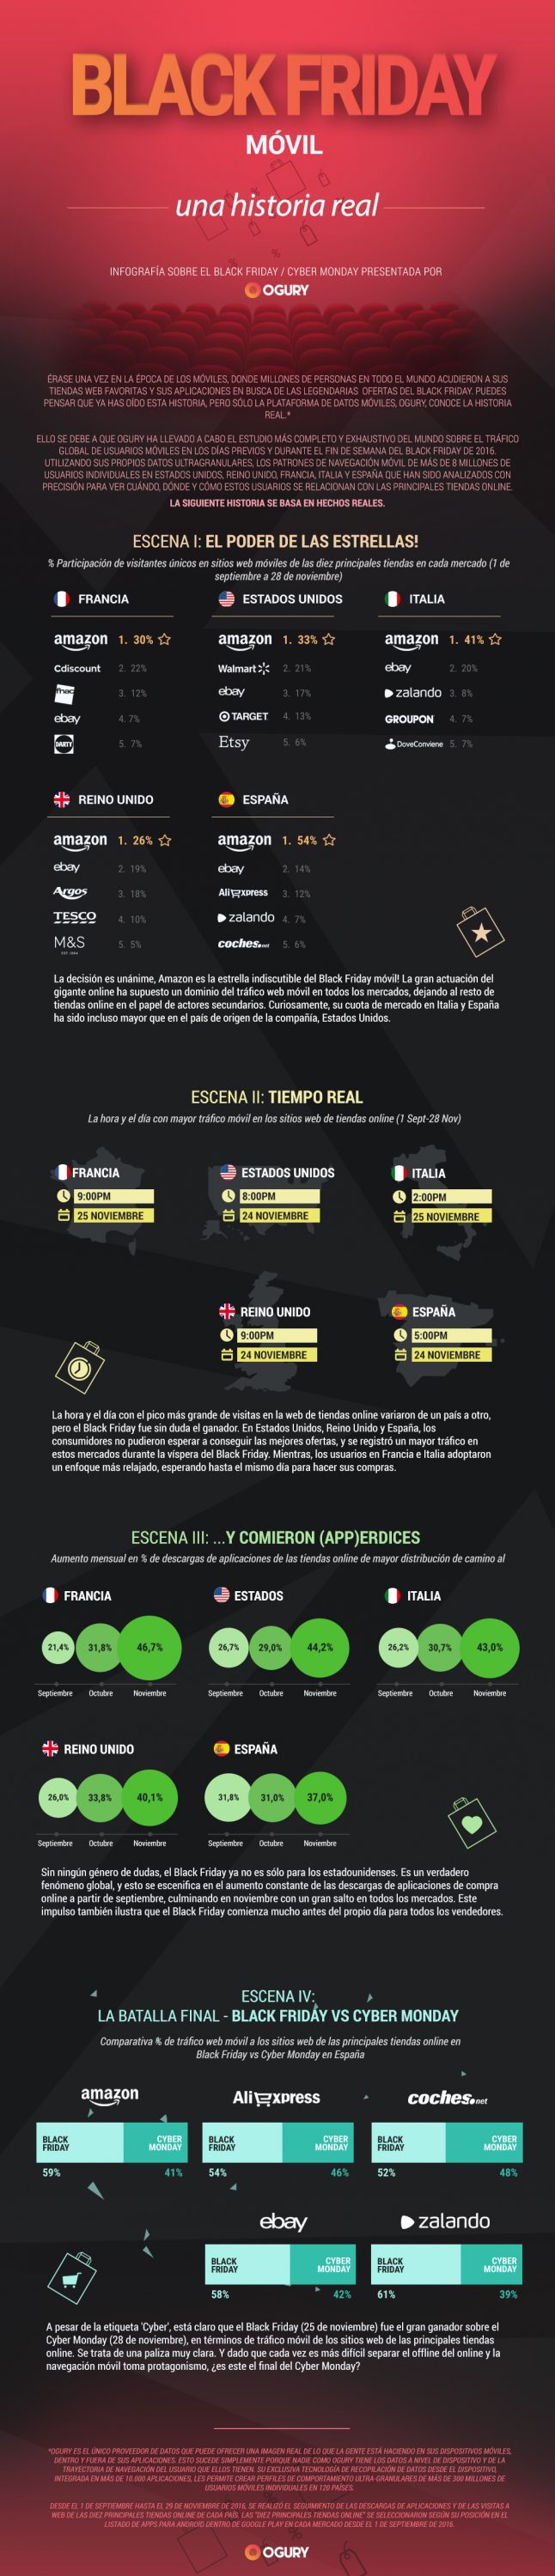 infografía de los resultados del Black Friday en España